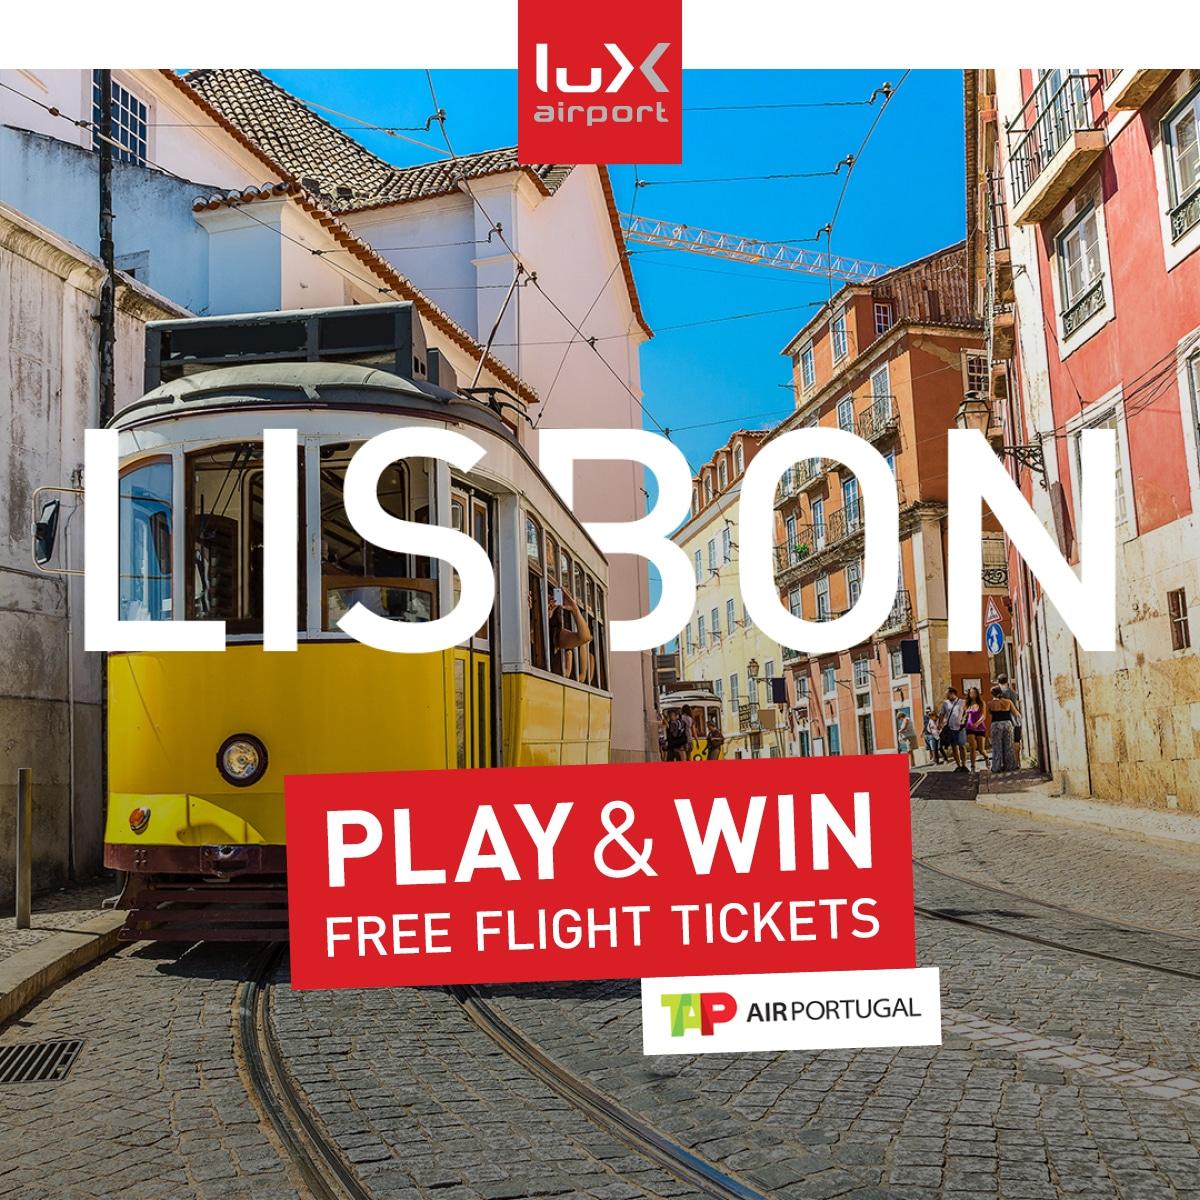 La Première Destination Est Lisbonne. Vous Pouvez Participer À Ce Concours Du 31.07.18 Au 06.08.2018. Bonne Chance !  